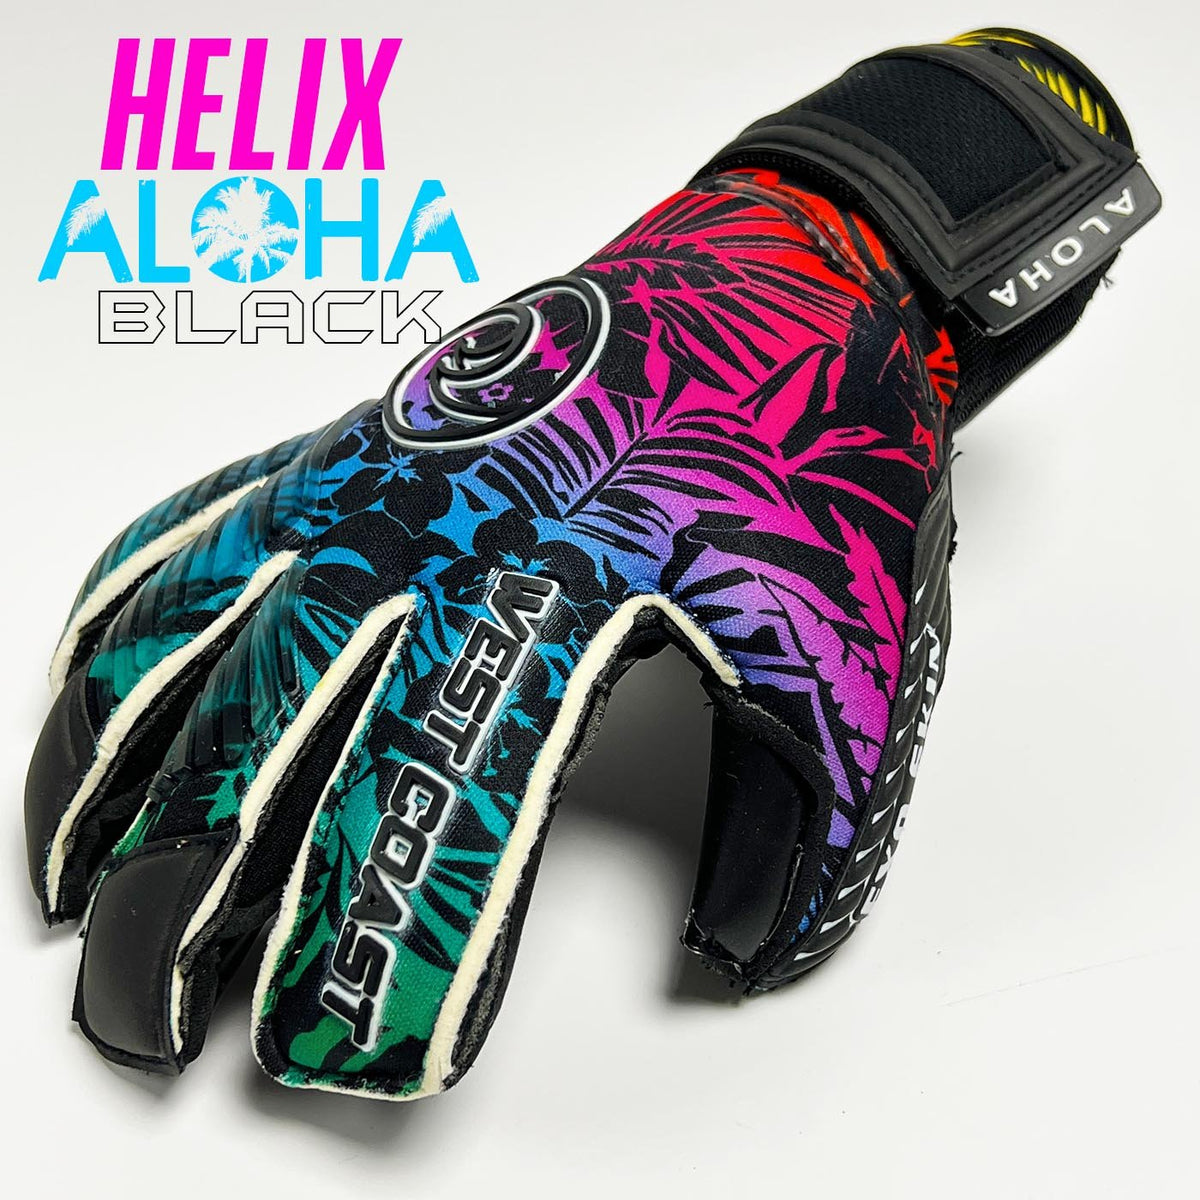 HELIX Aloha Black